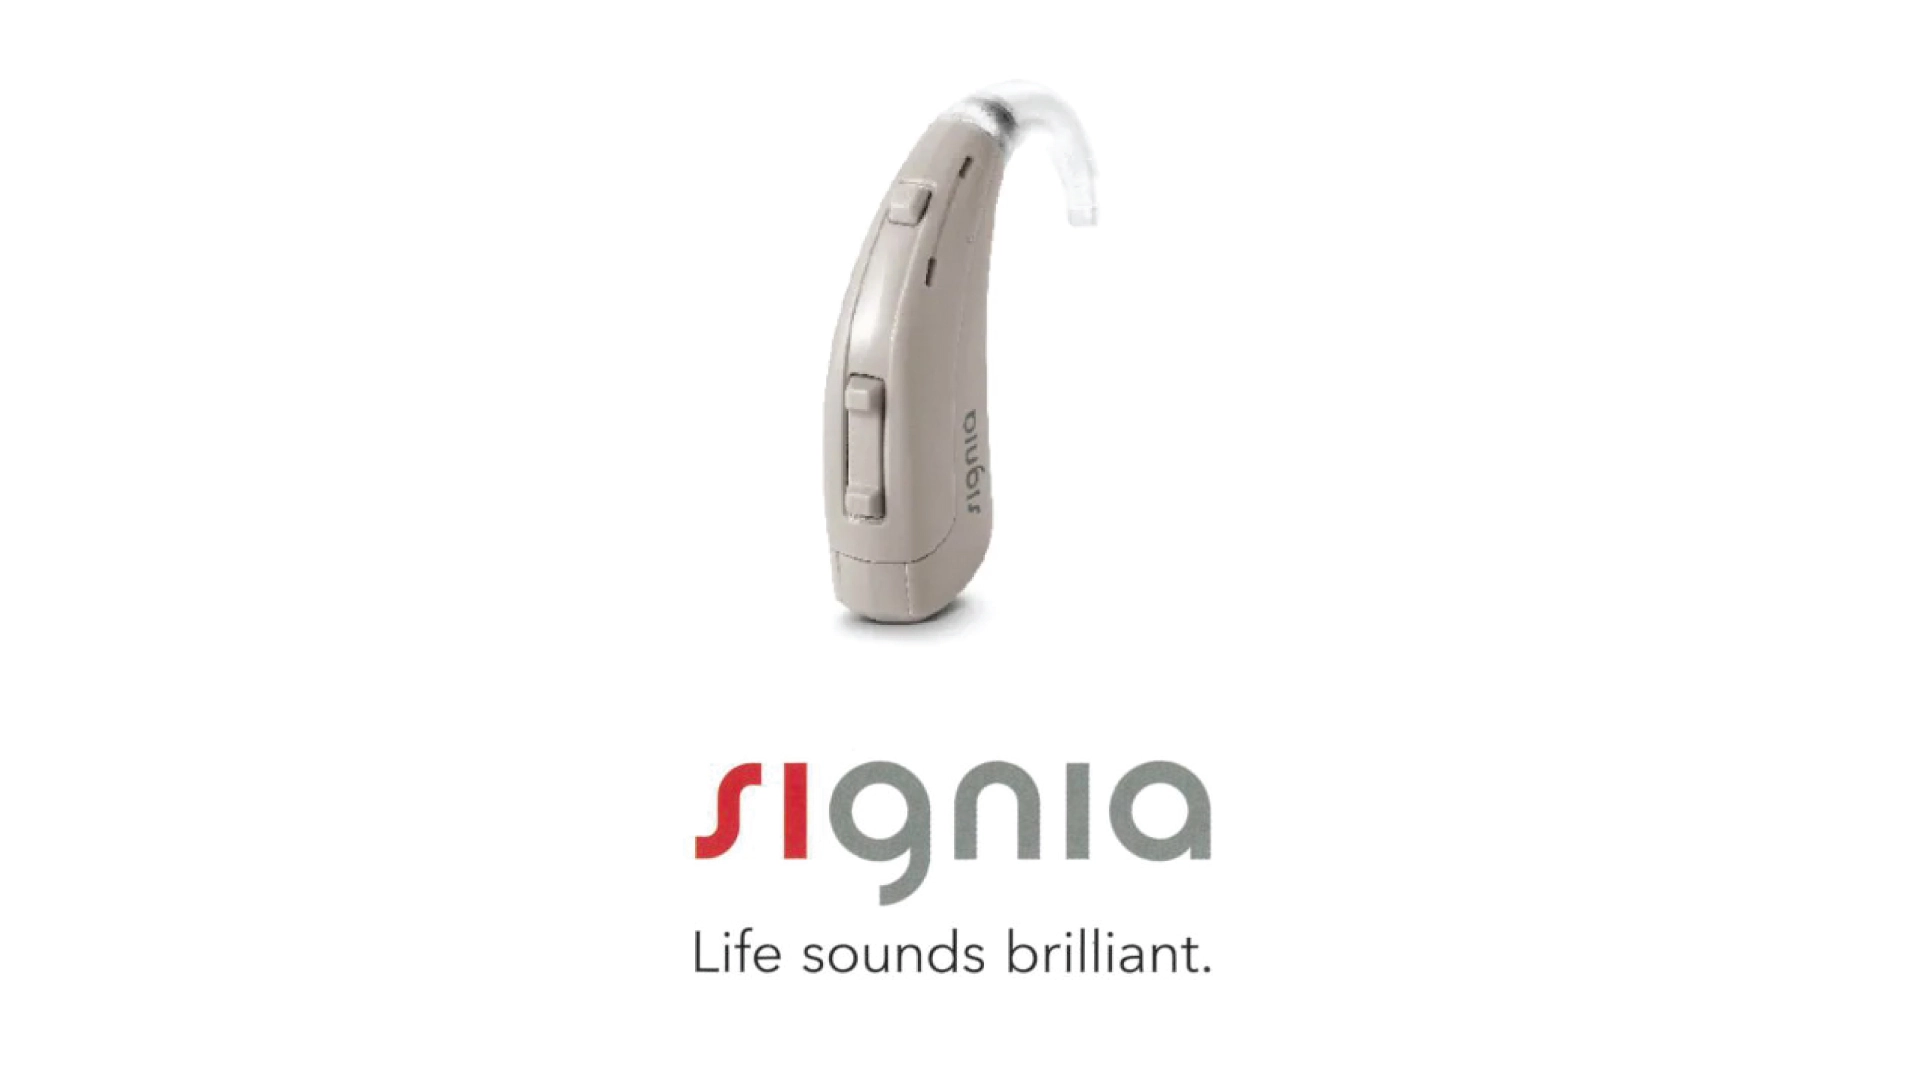 耳かけ型補聴器 シグニア プロンプト【signia prompt】